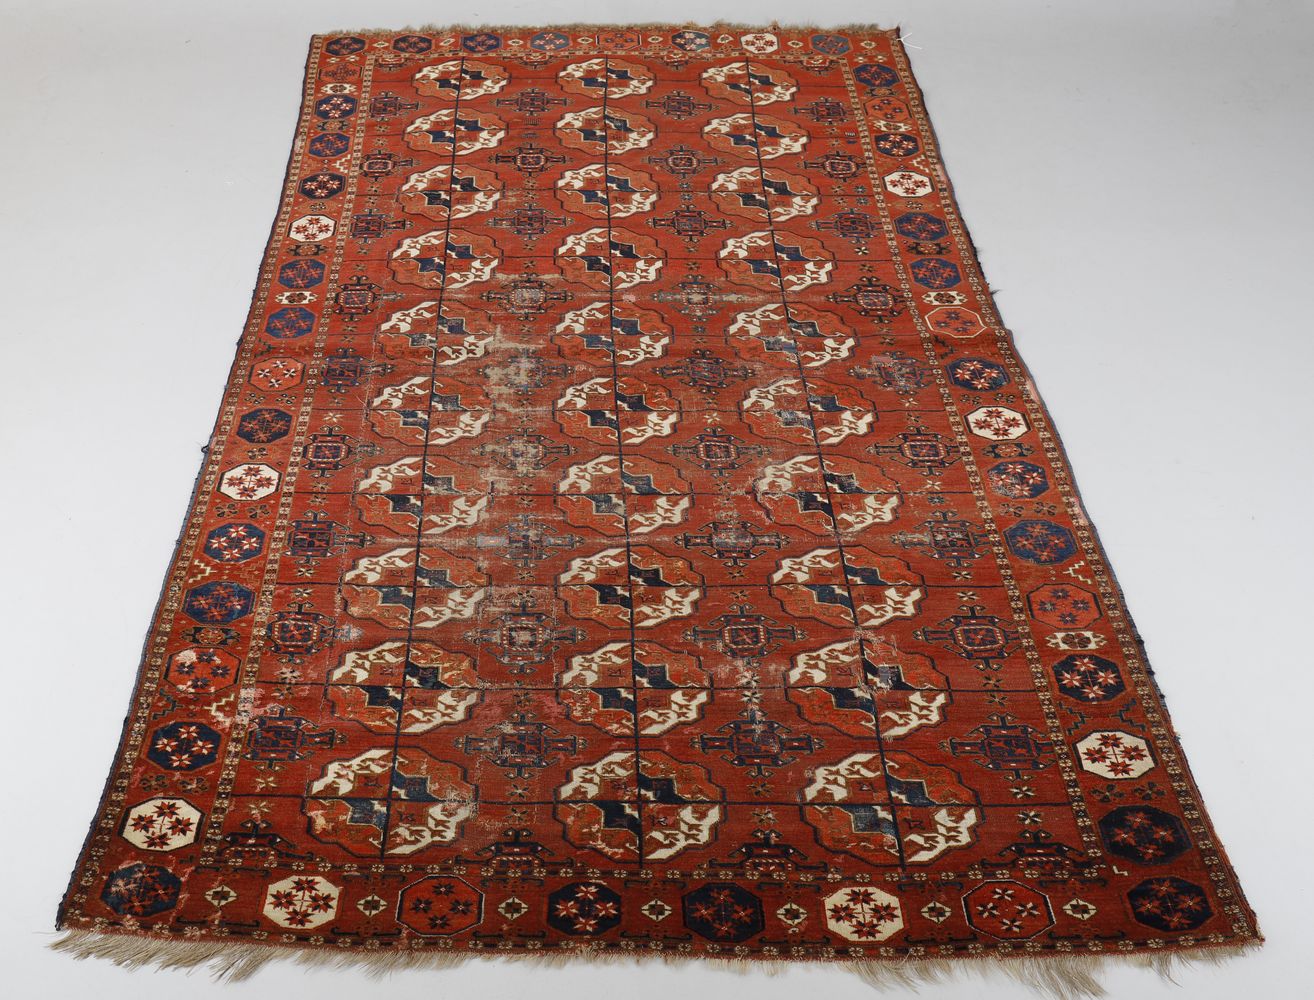 A Turkmen Tekke carpet